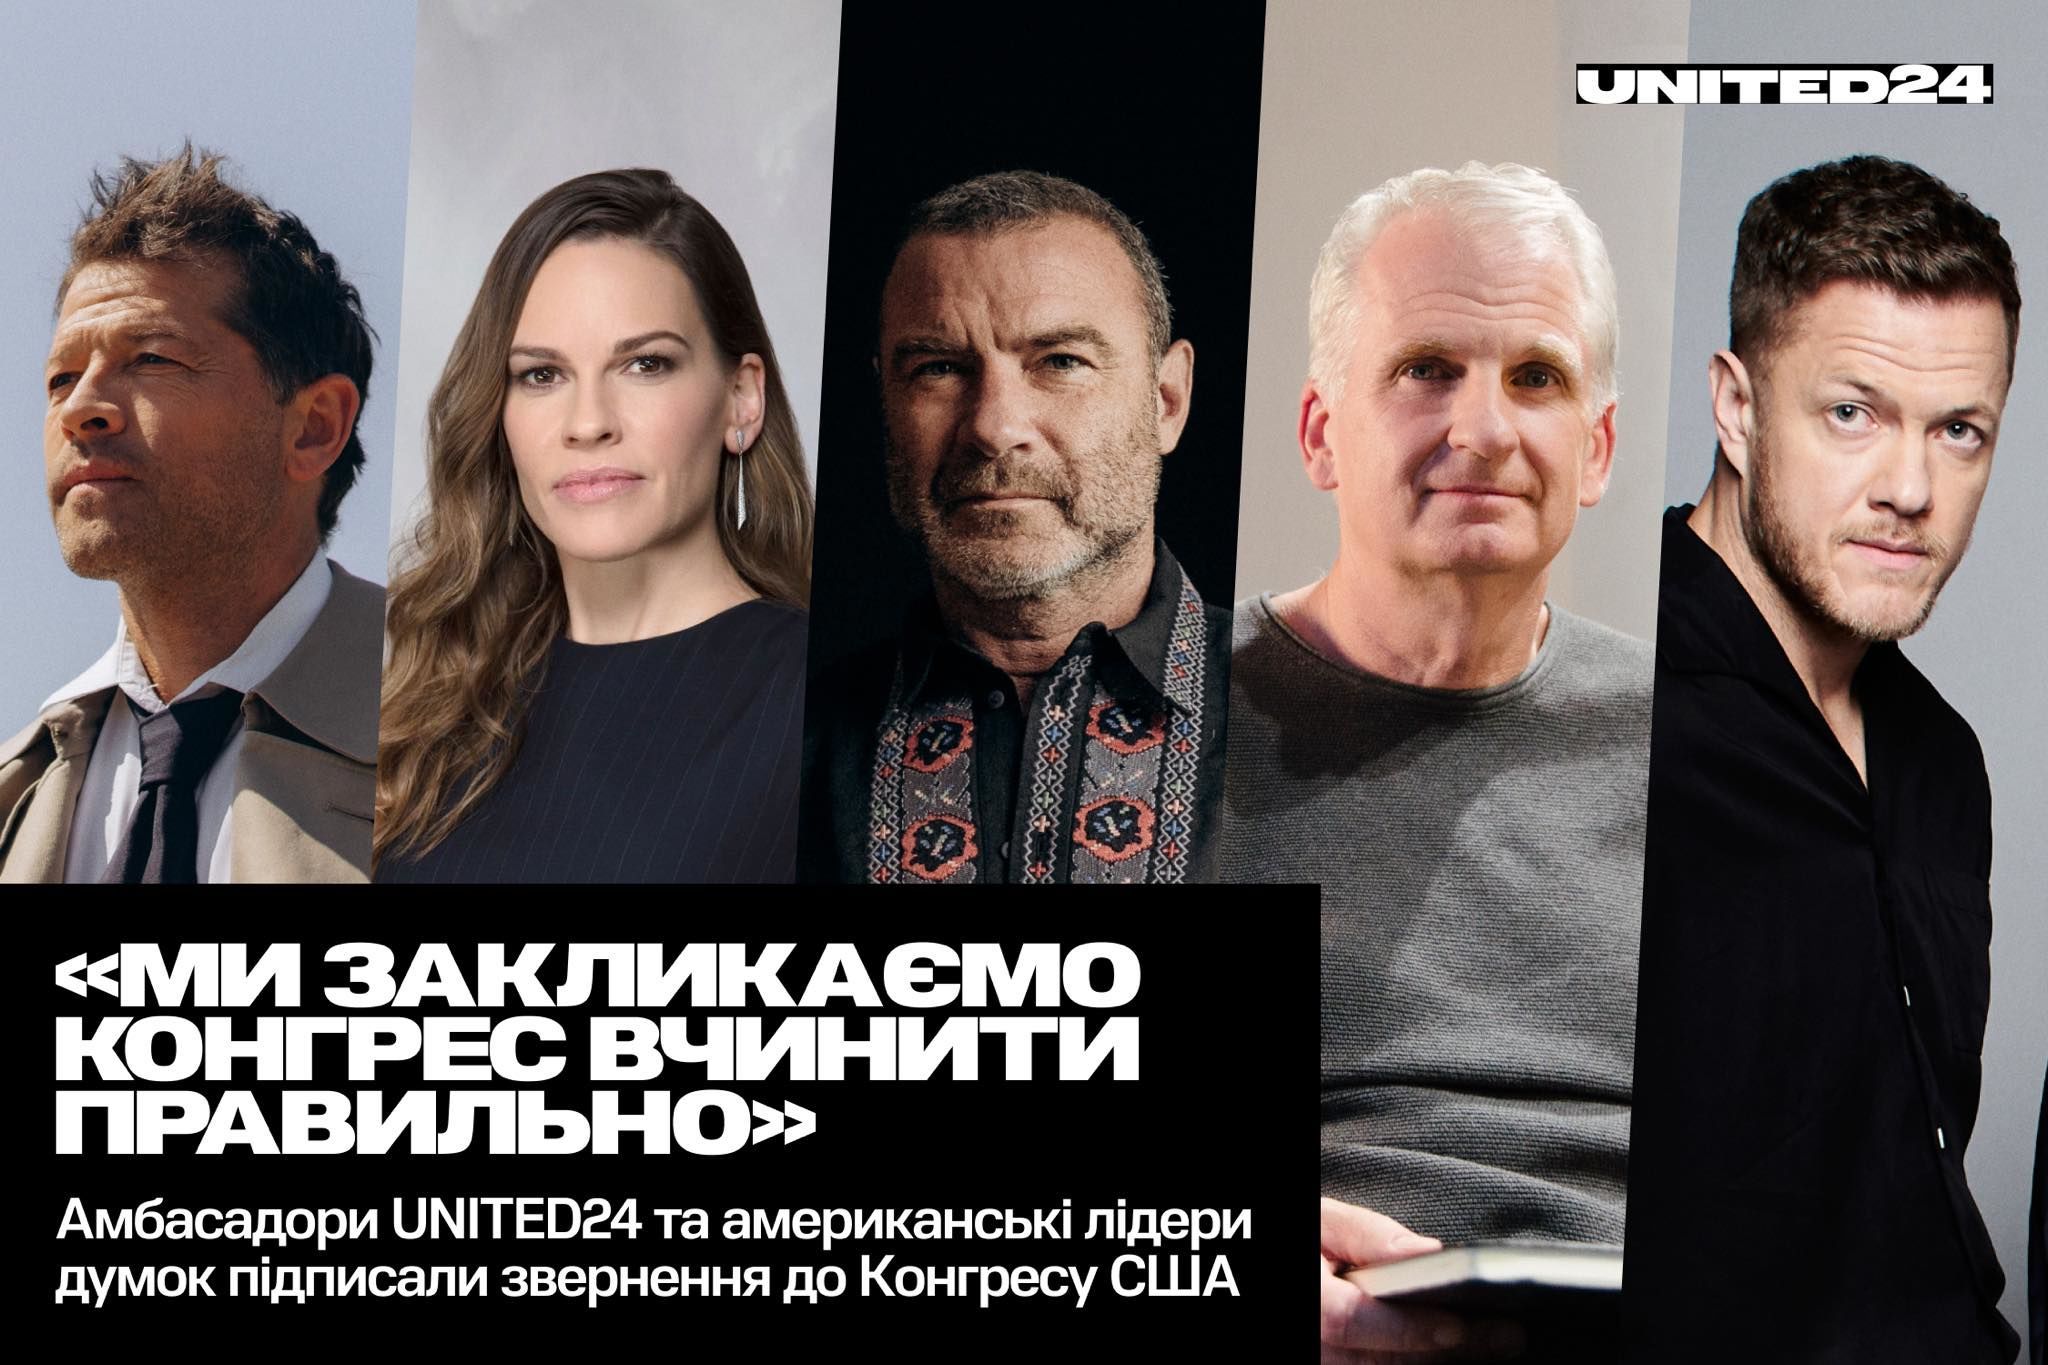 Мілано, Пенн, Коллінз та інші зірки Голлівуду закликали США негайно допомогти Україні у війні з РФ